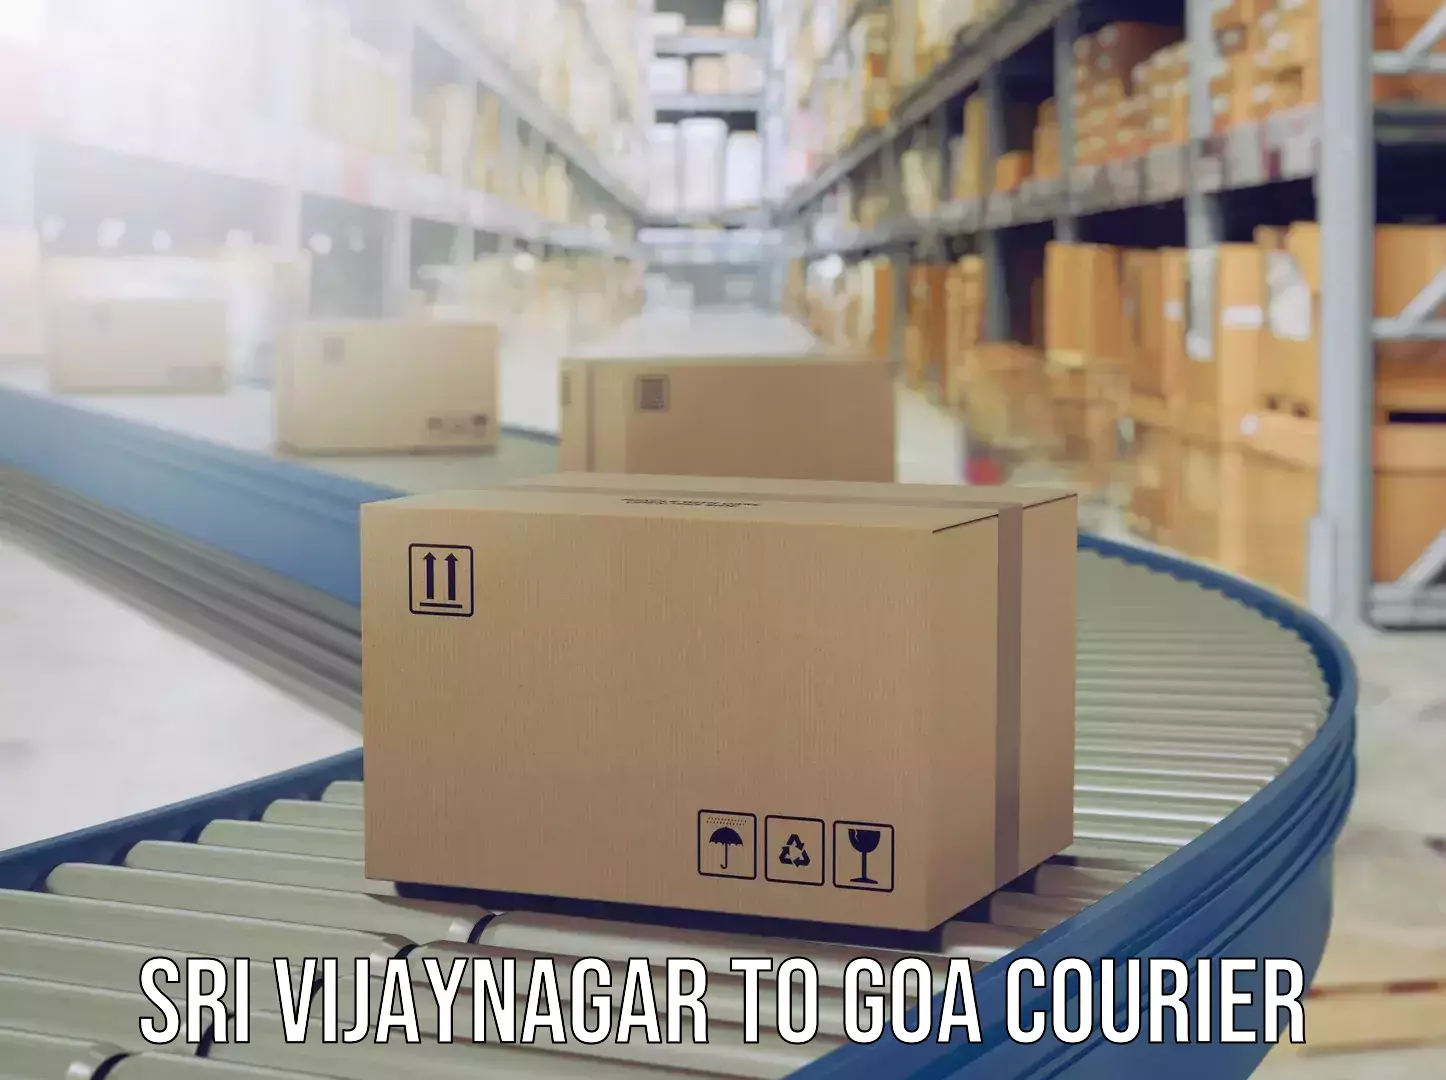 Luggage shipping discounts in Sri Vijaynagar to NIT Goa